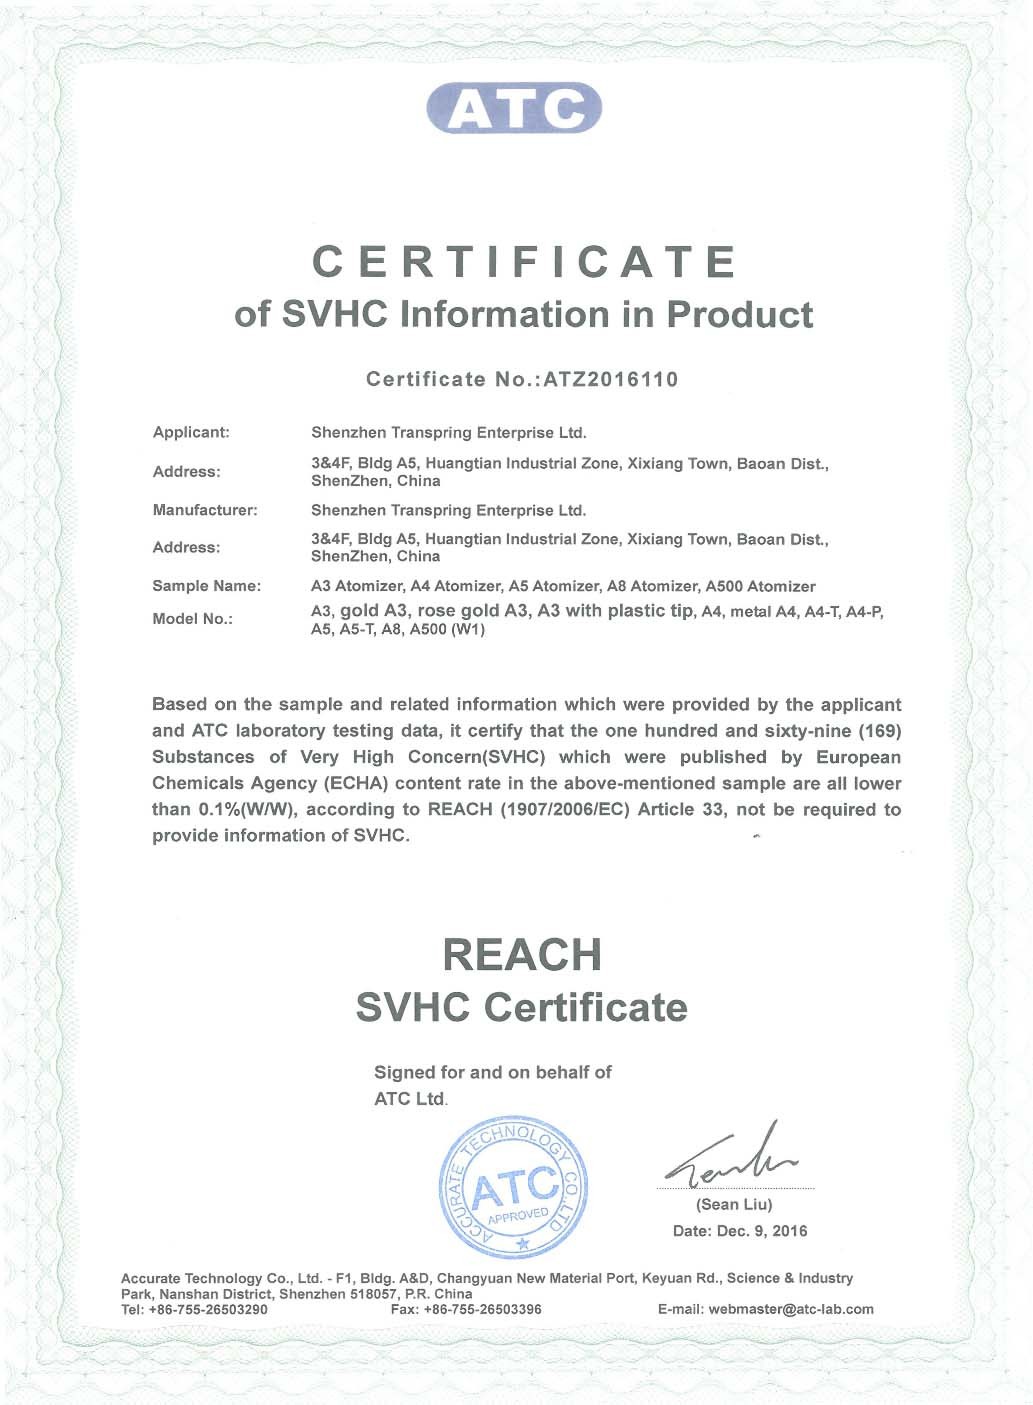 Reach Certificate